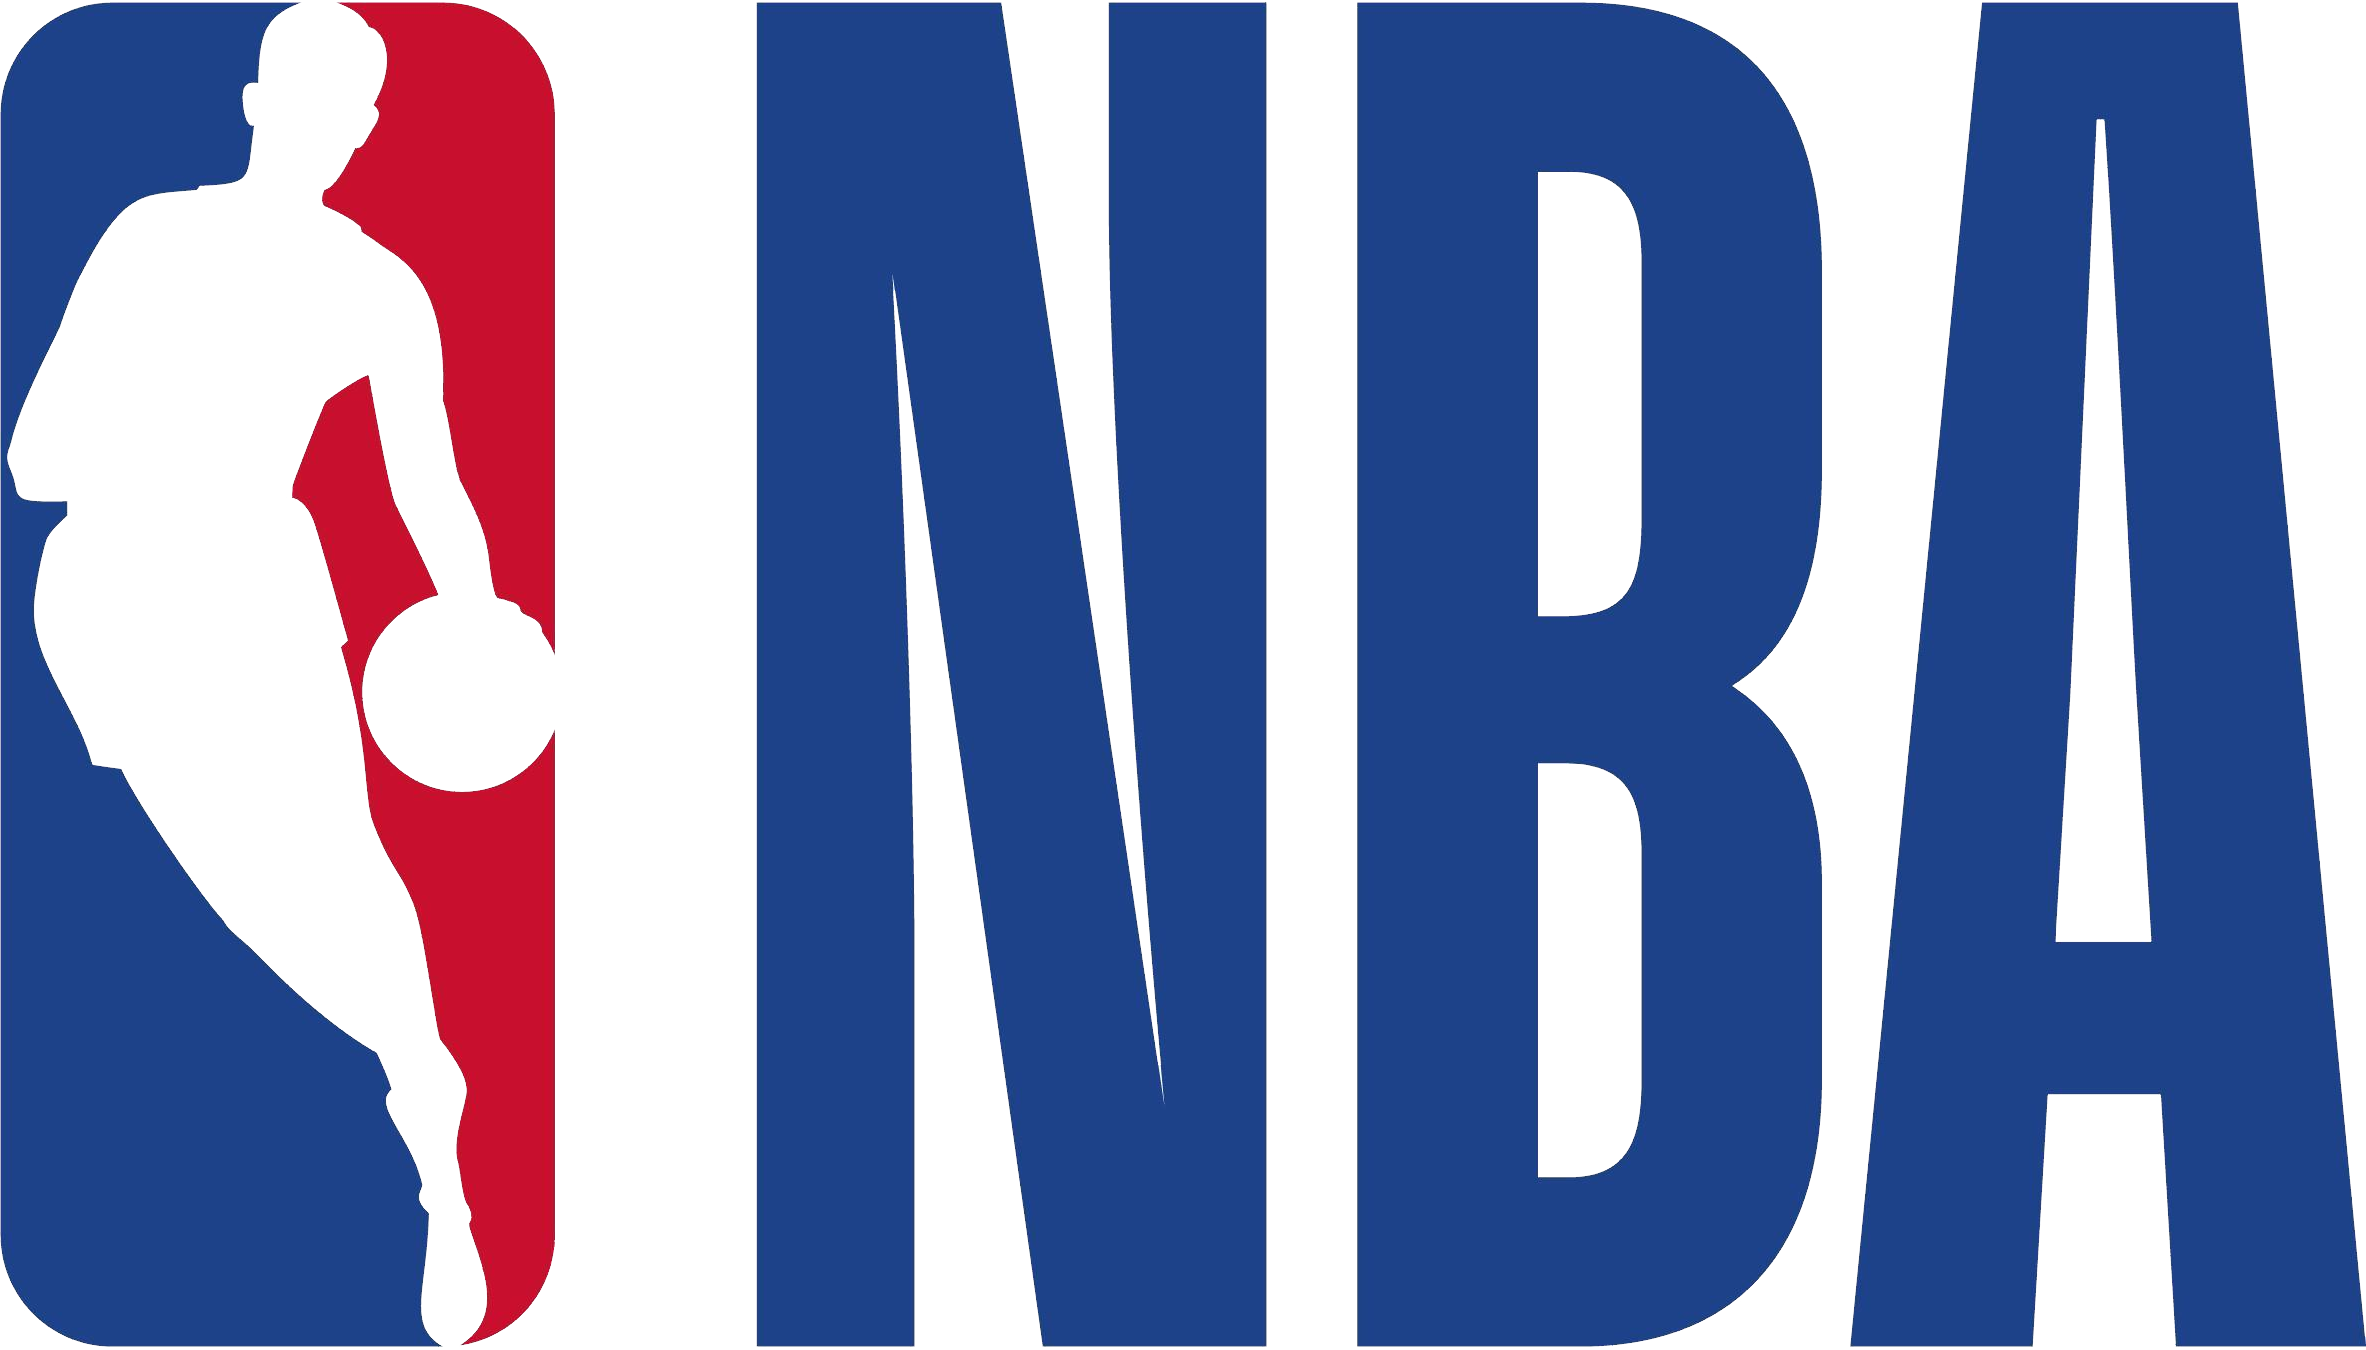 NBA logo PNG images free download